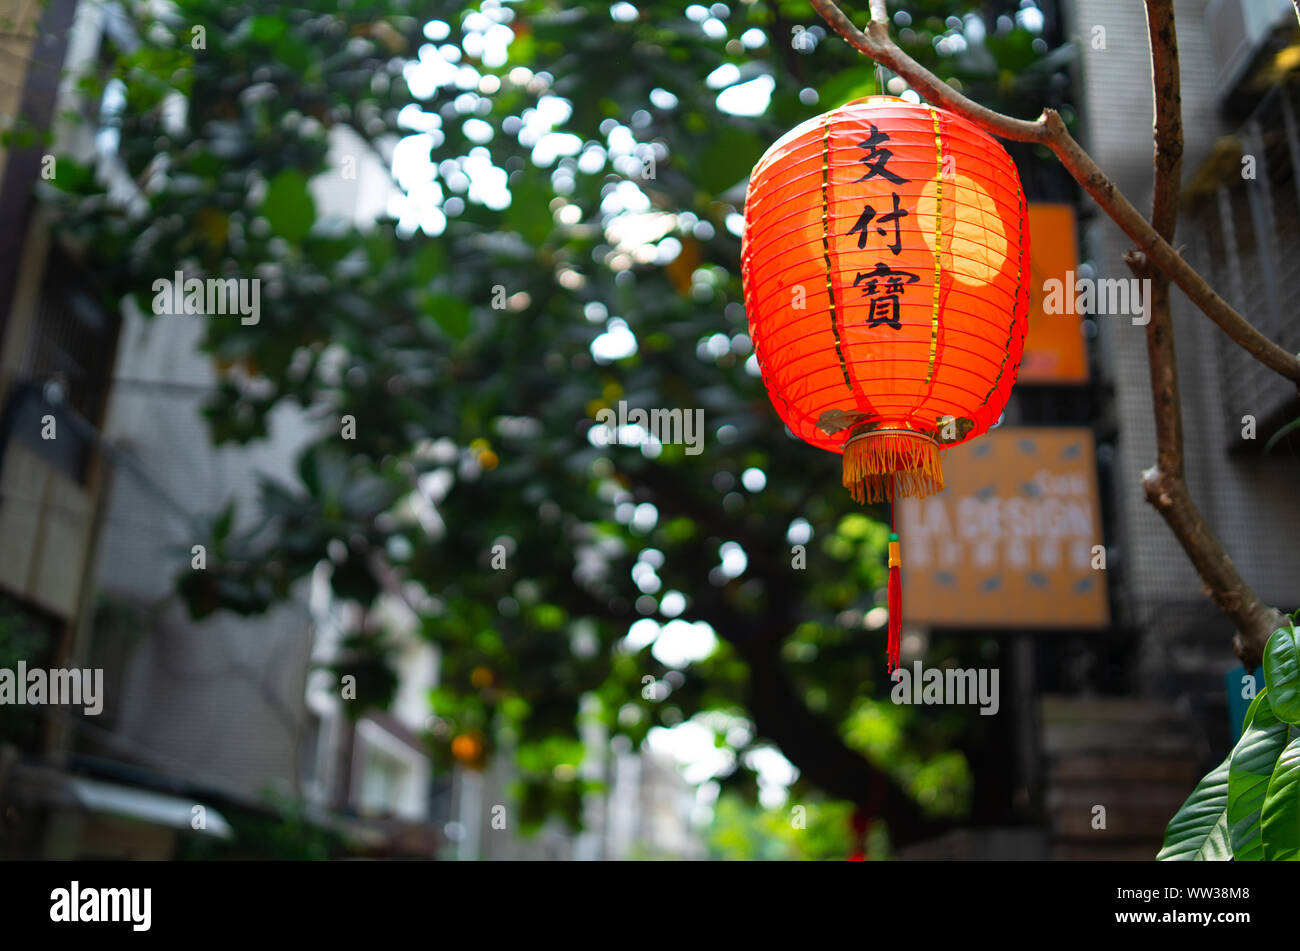 Taipei, Taiwan: Traditionelle japanische Laterne mit japanischen Schrift hängen an Restaurant am Bürgersteig in kleine Straße mit verschwommenen Hintergrund Stockfoto